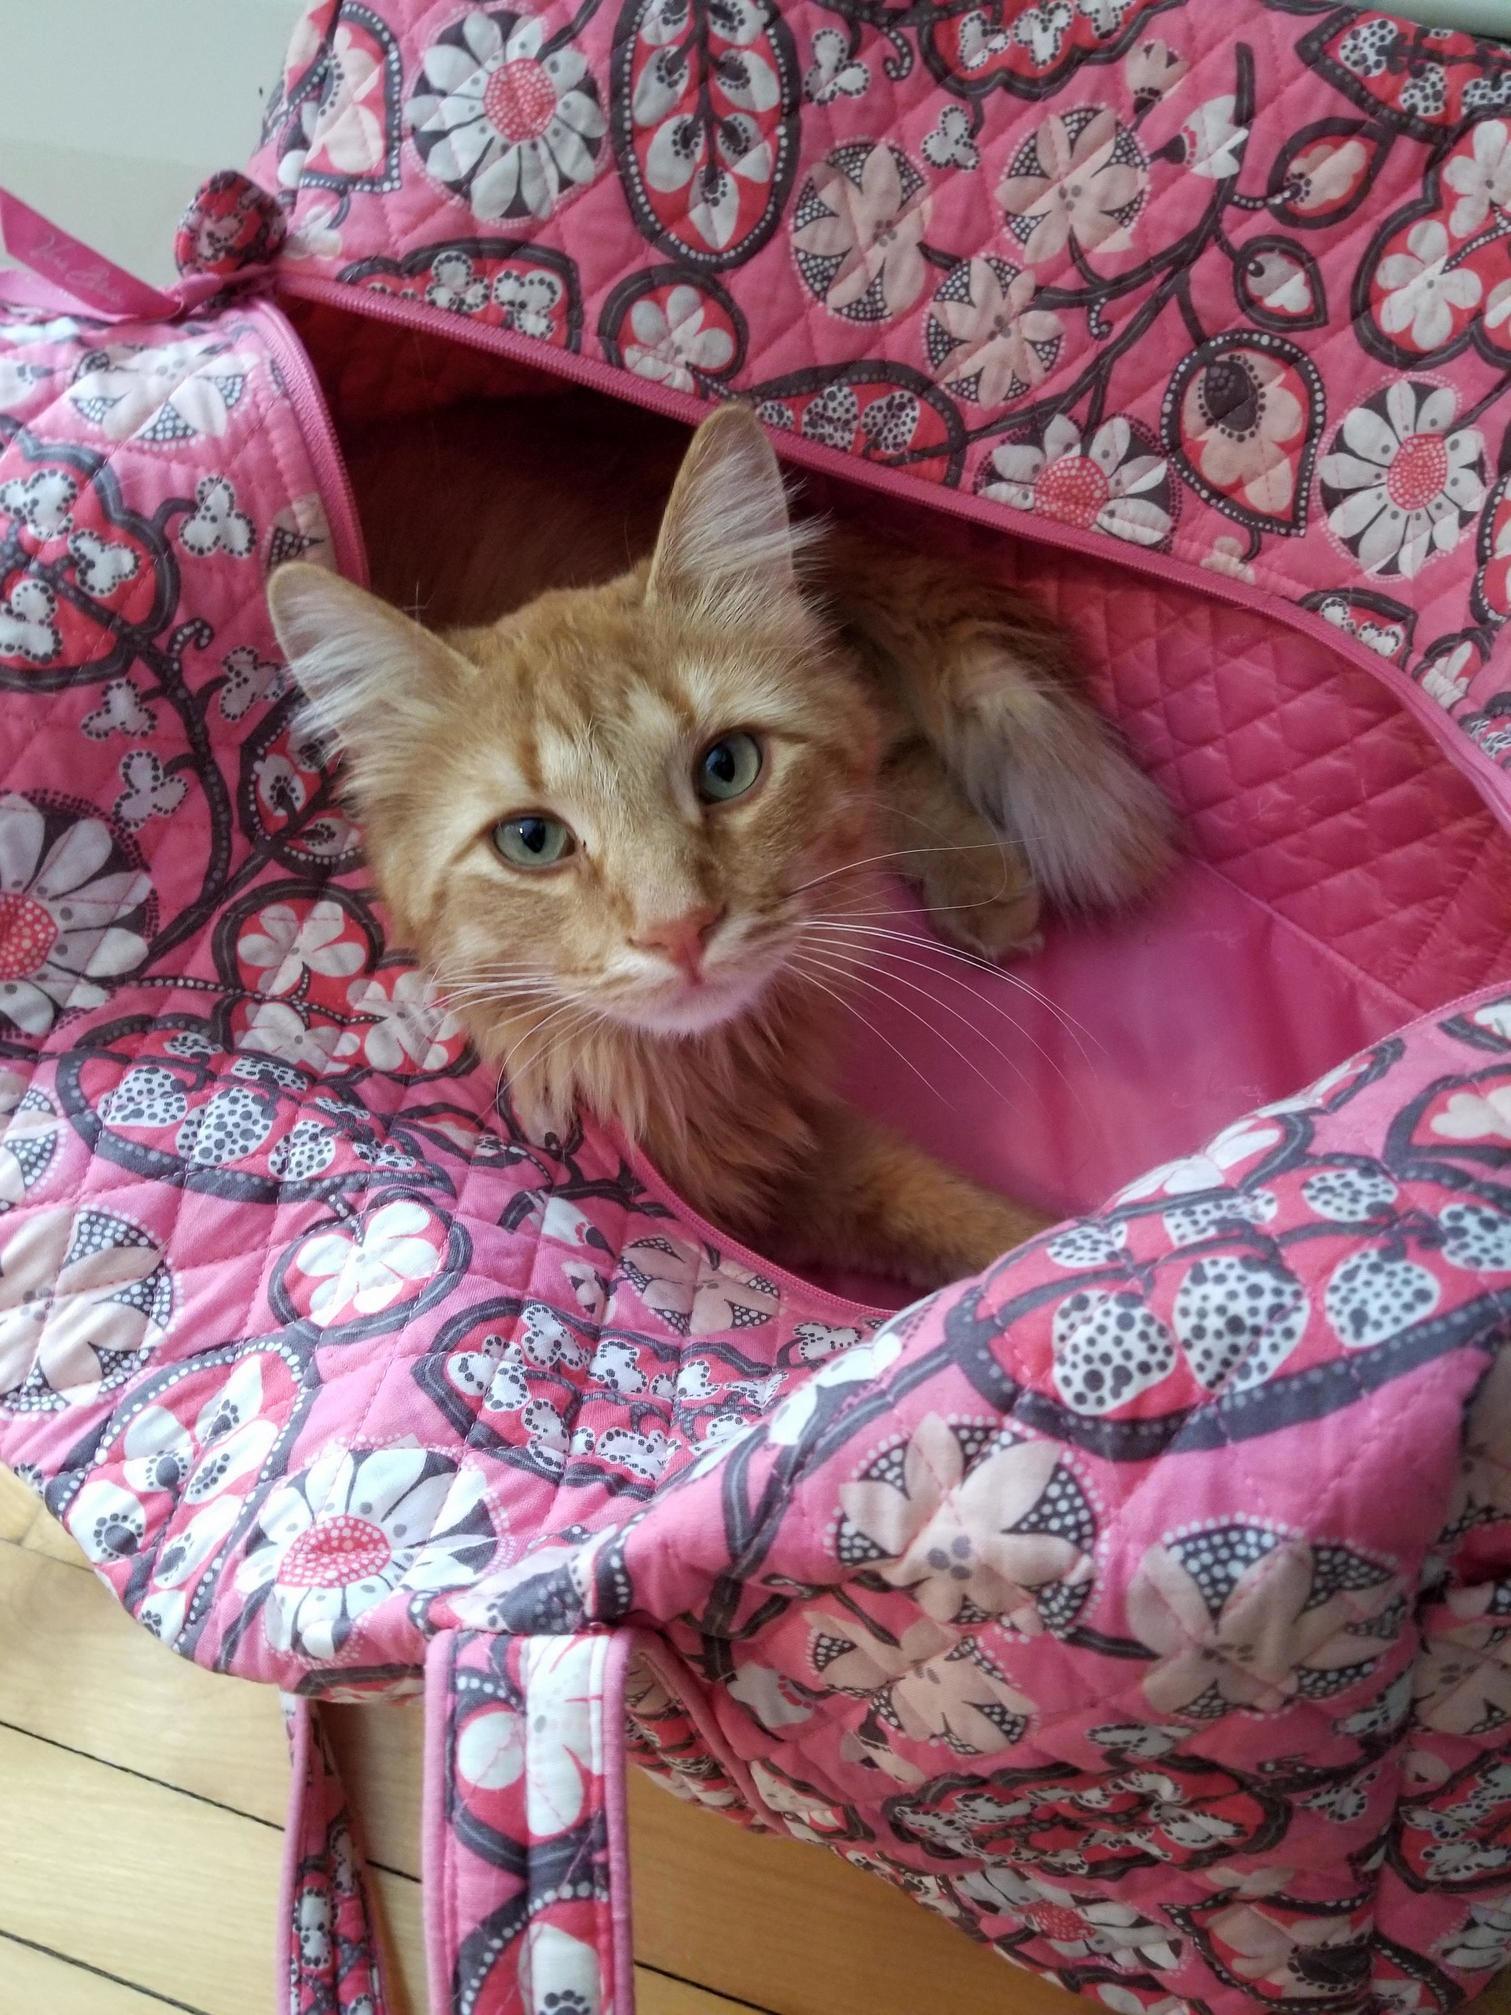 Paul the cat in his pink bag.